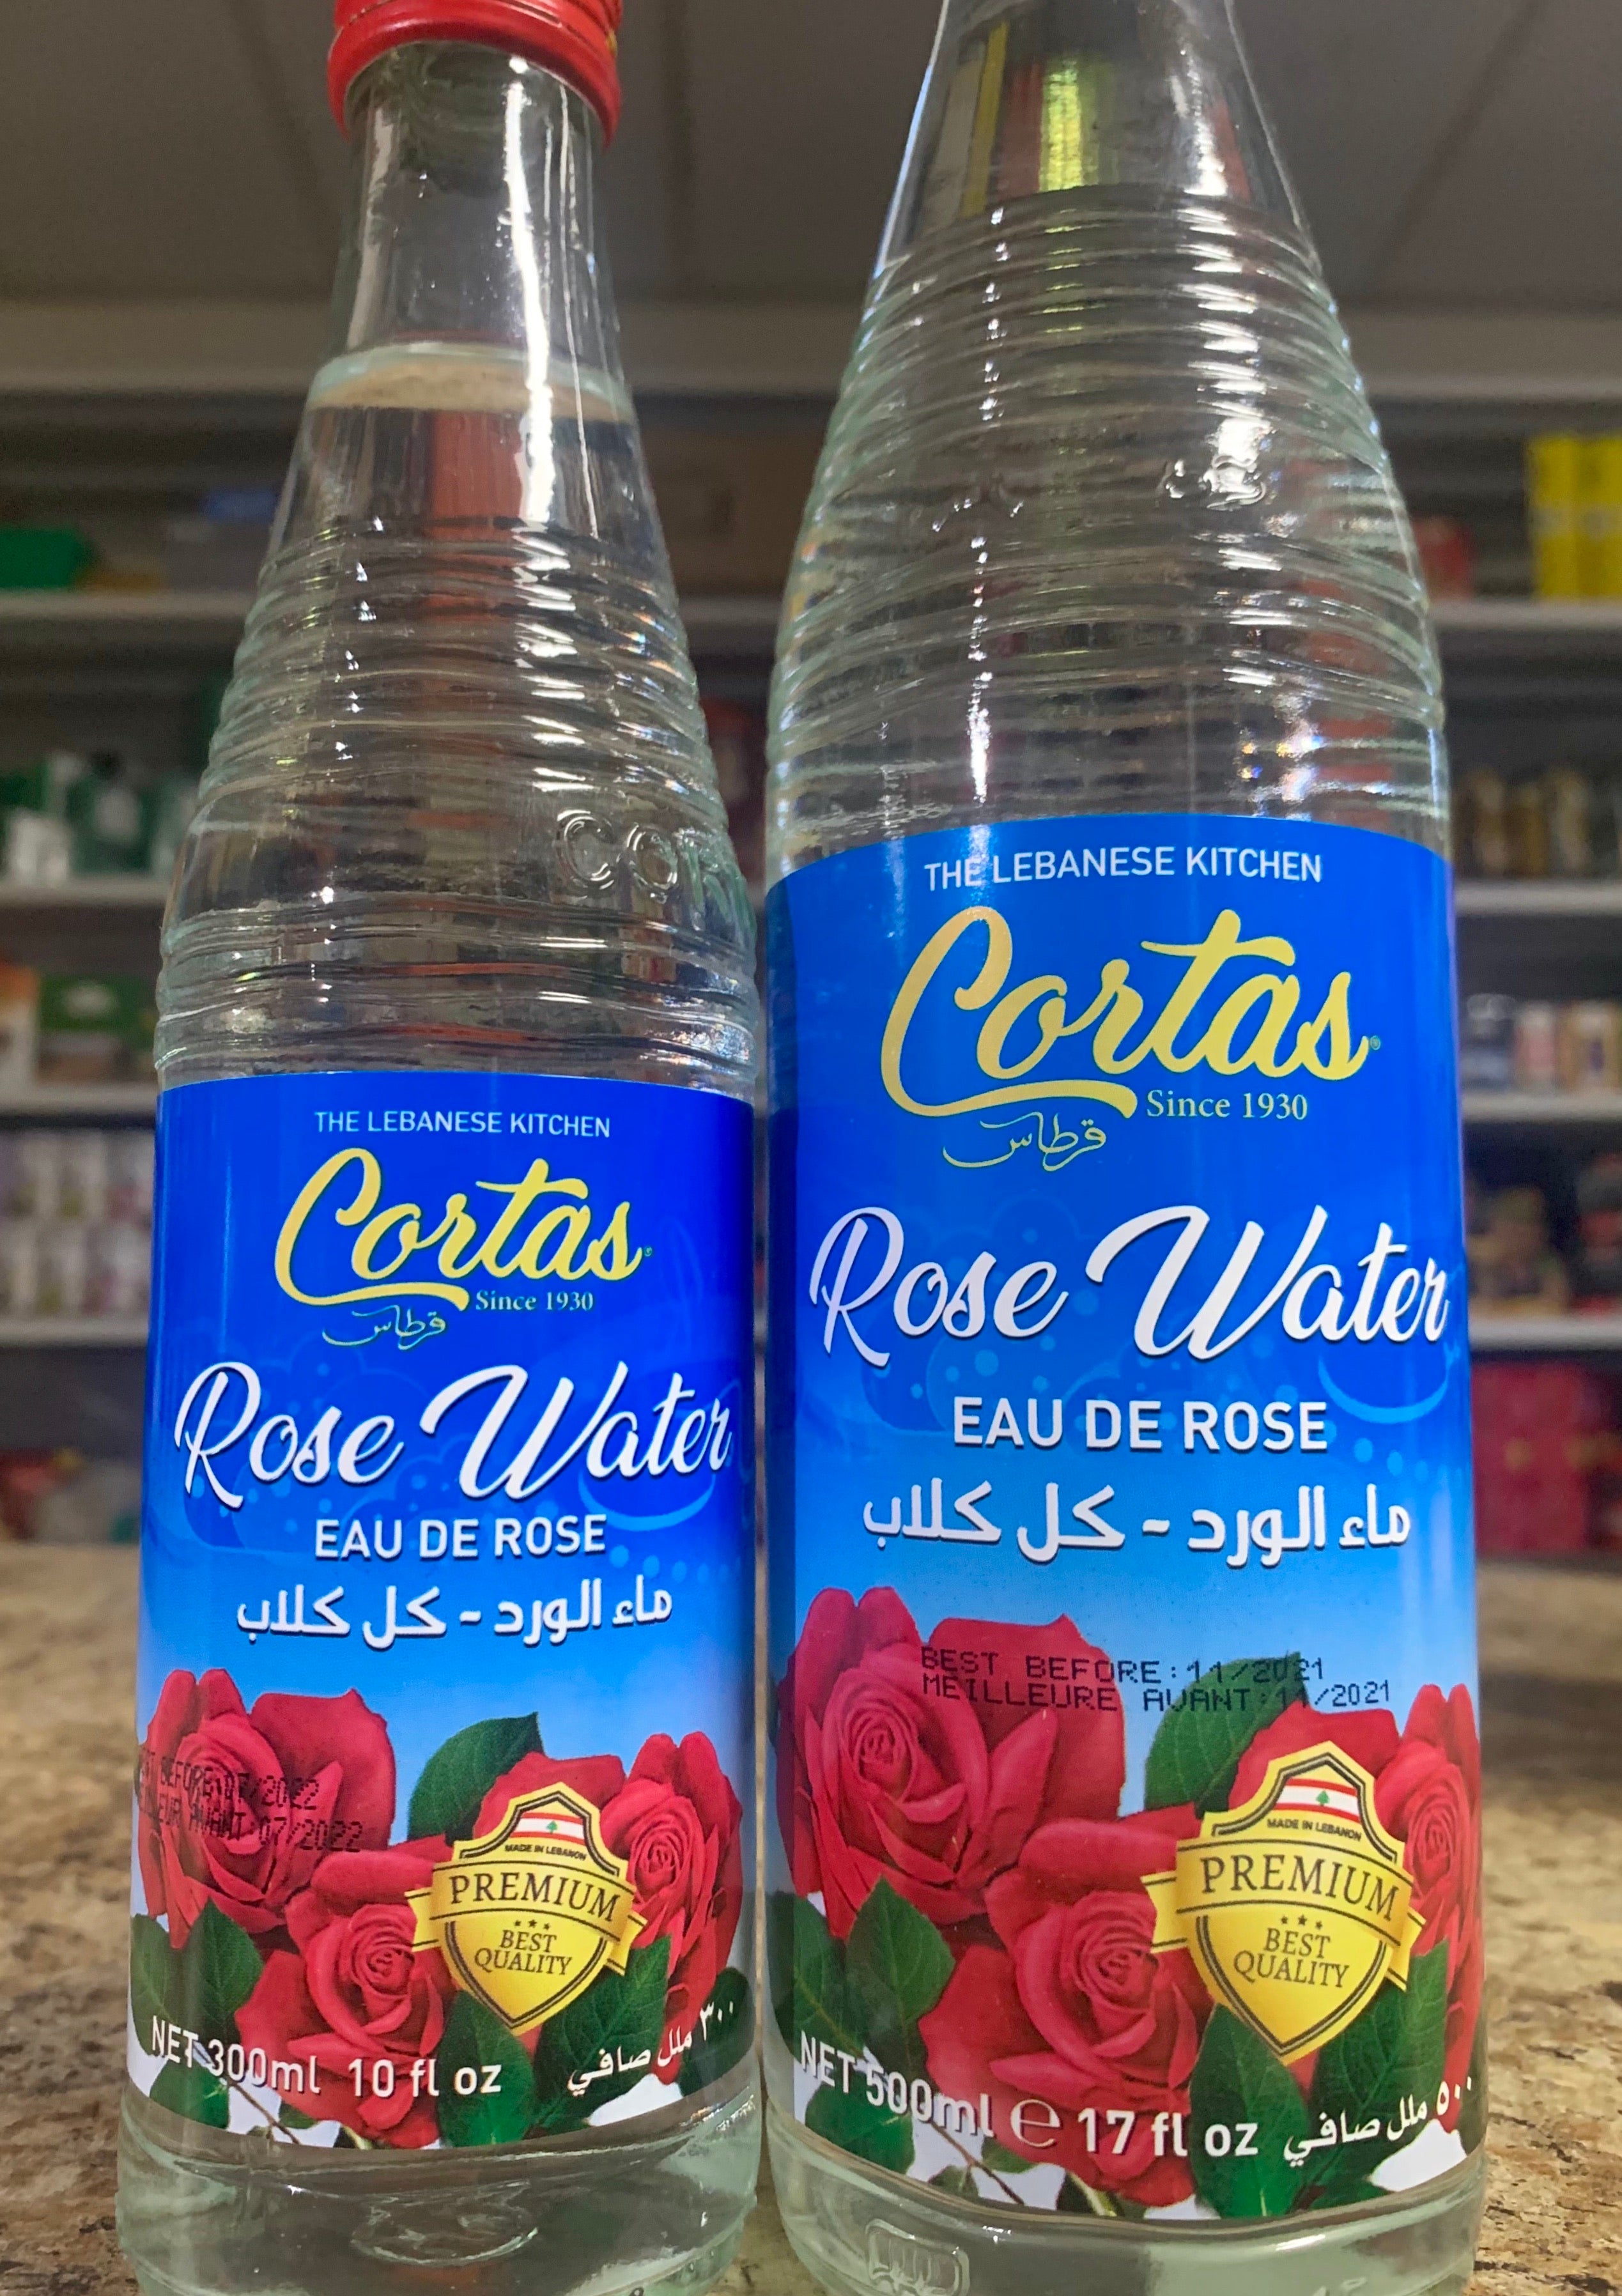 Cortas Rose Water - 10 fl oz bottle